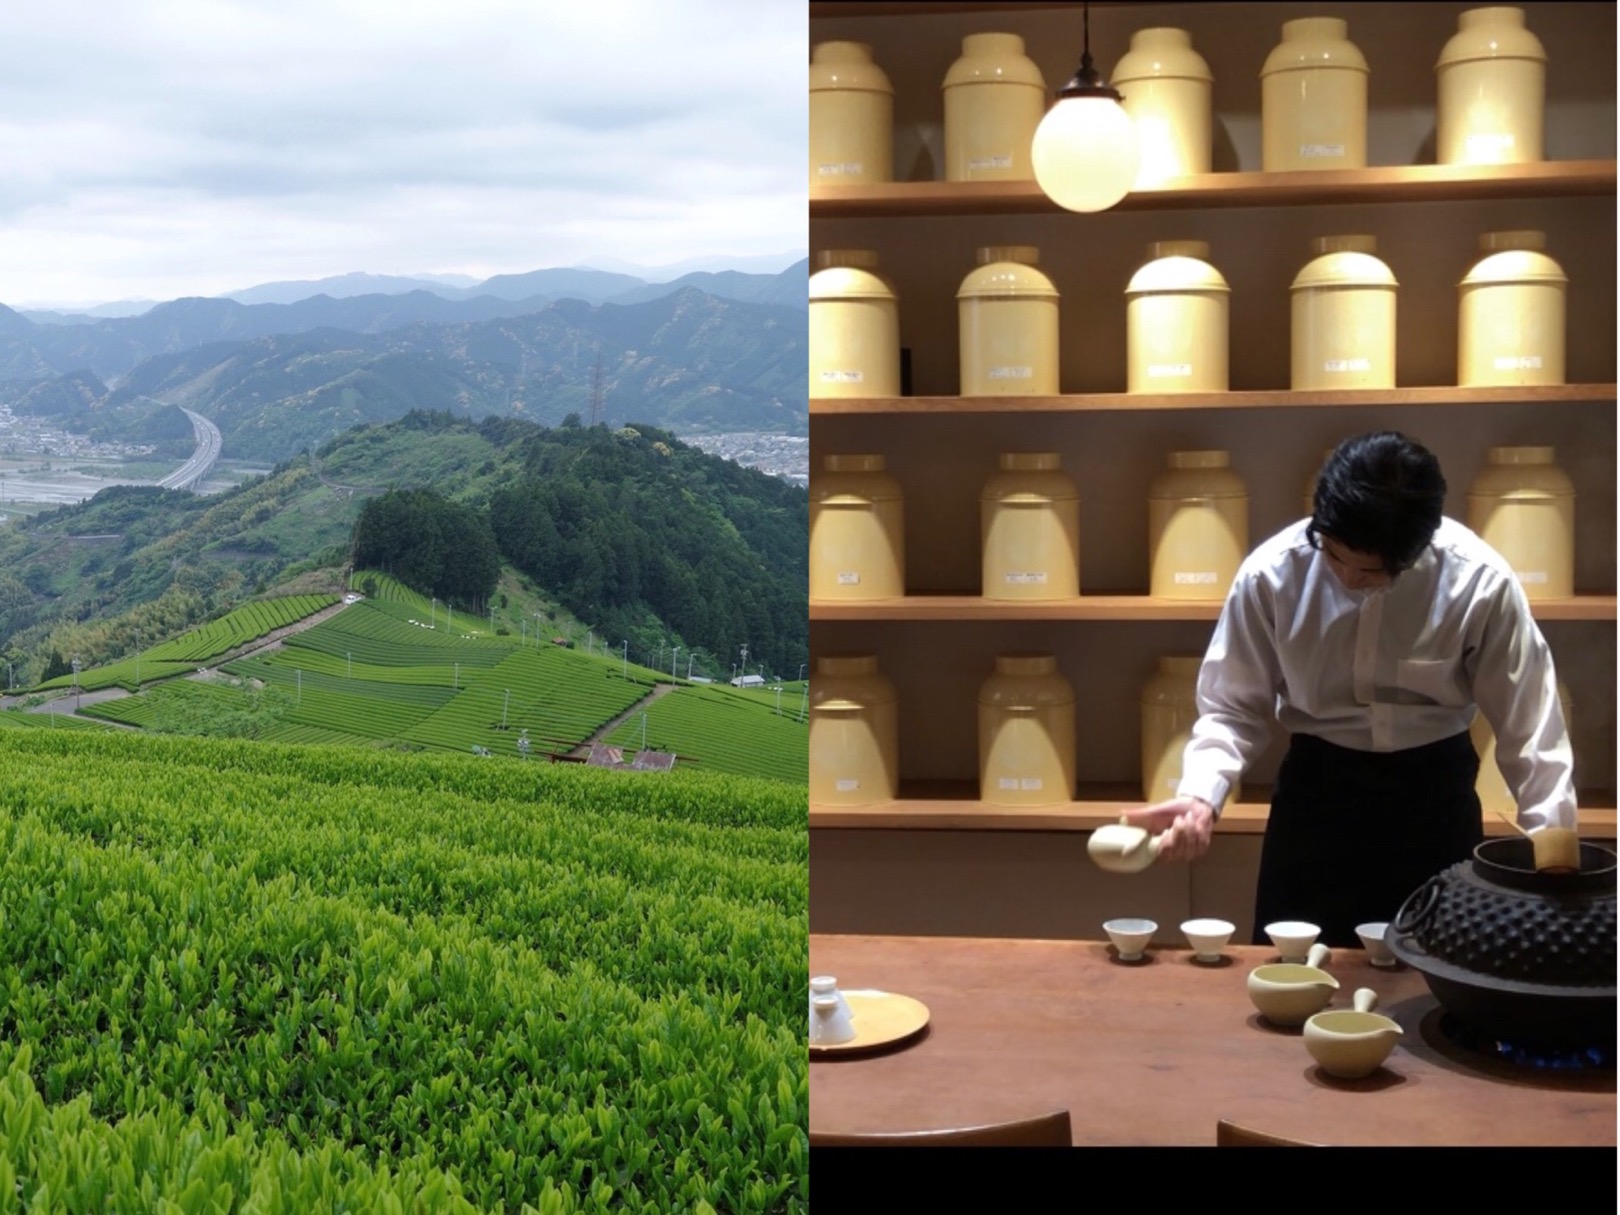 Hidden Gem Tea Farm and Stylish Tea Cafe Tours in Shizuoka near Tokyo, Japan